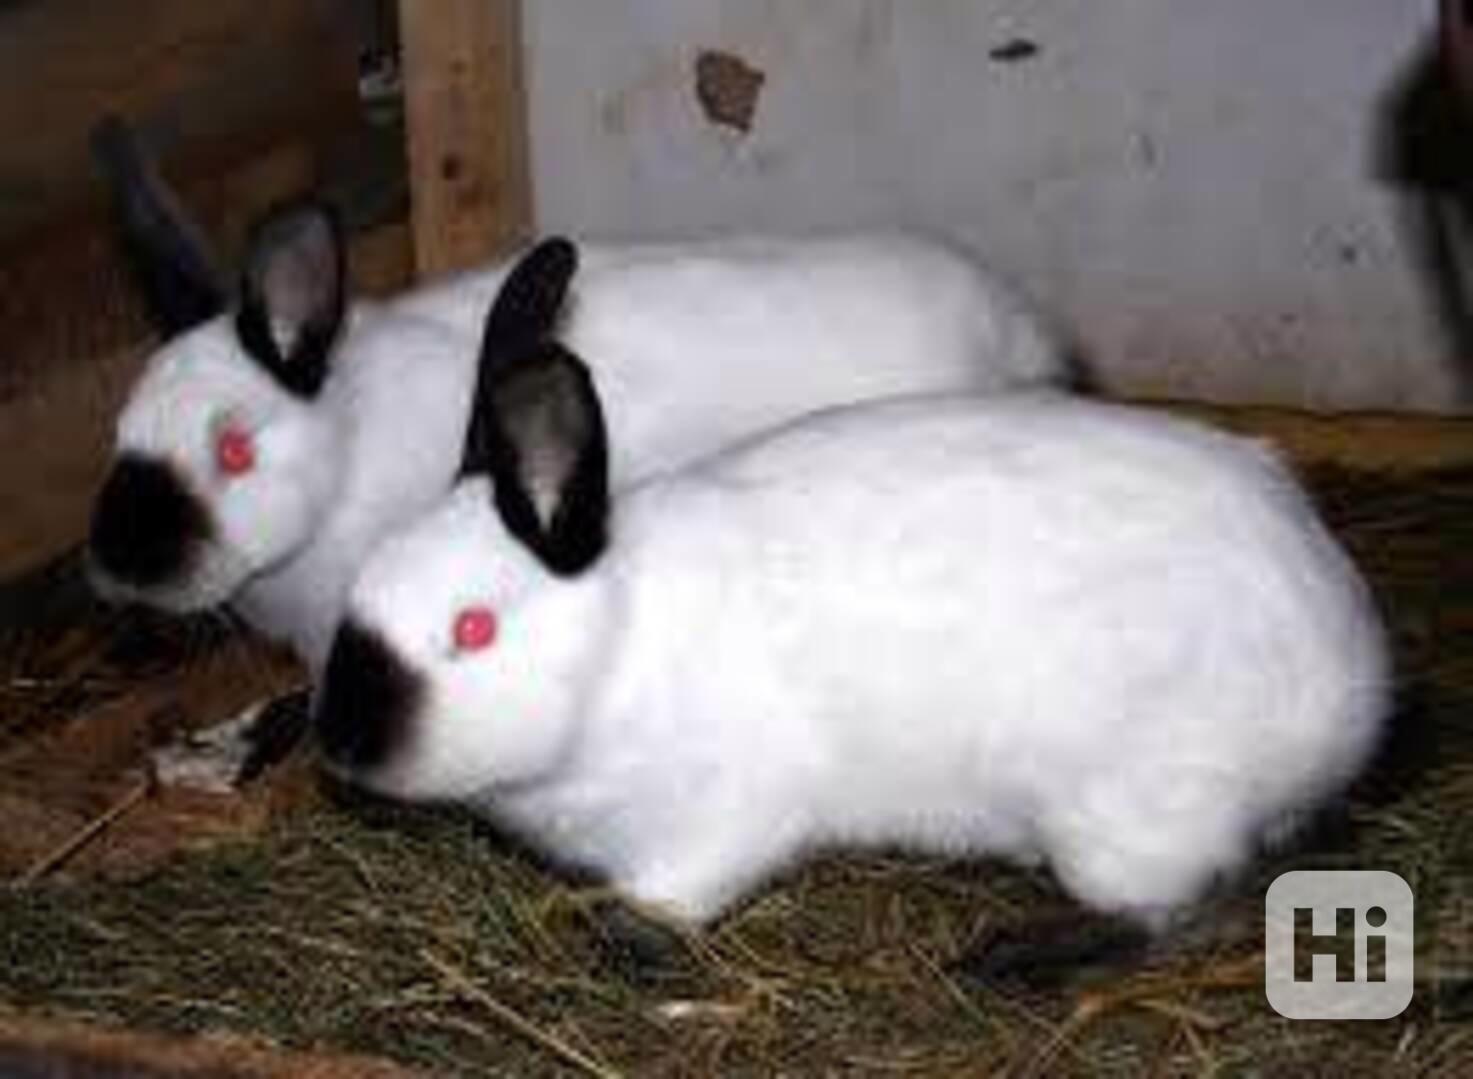 Prodej králíků - foto 1